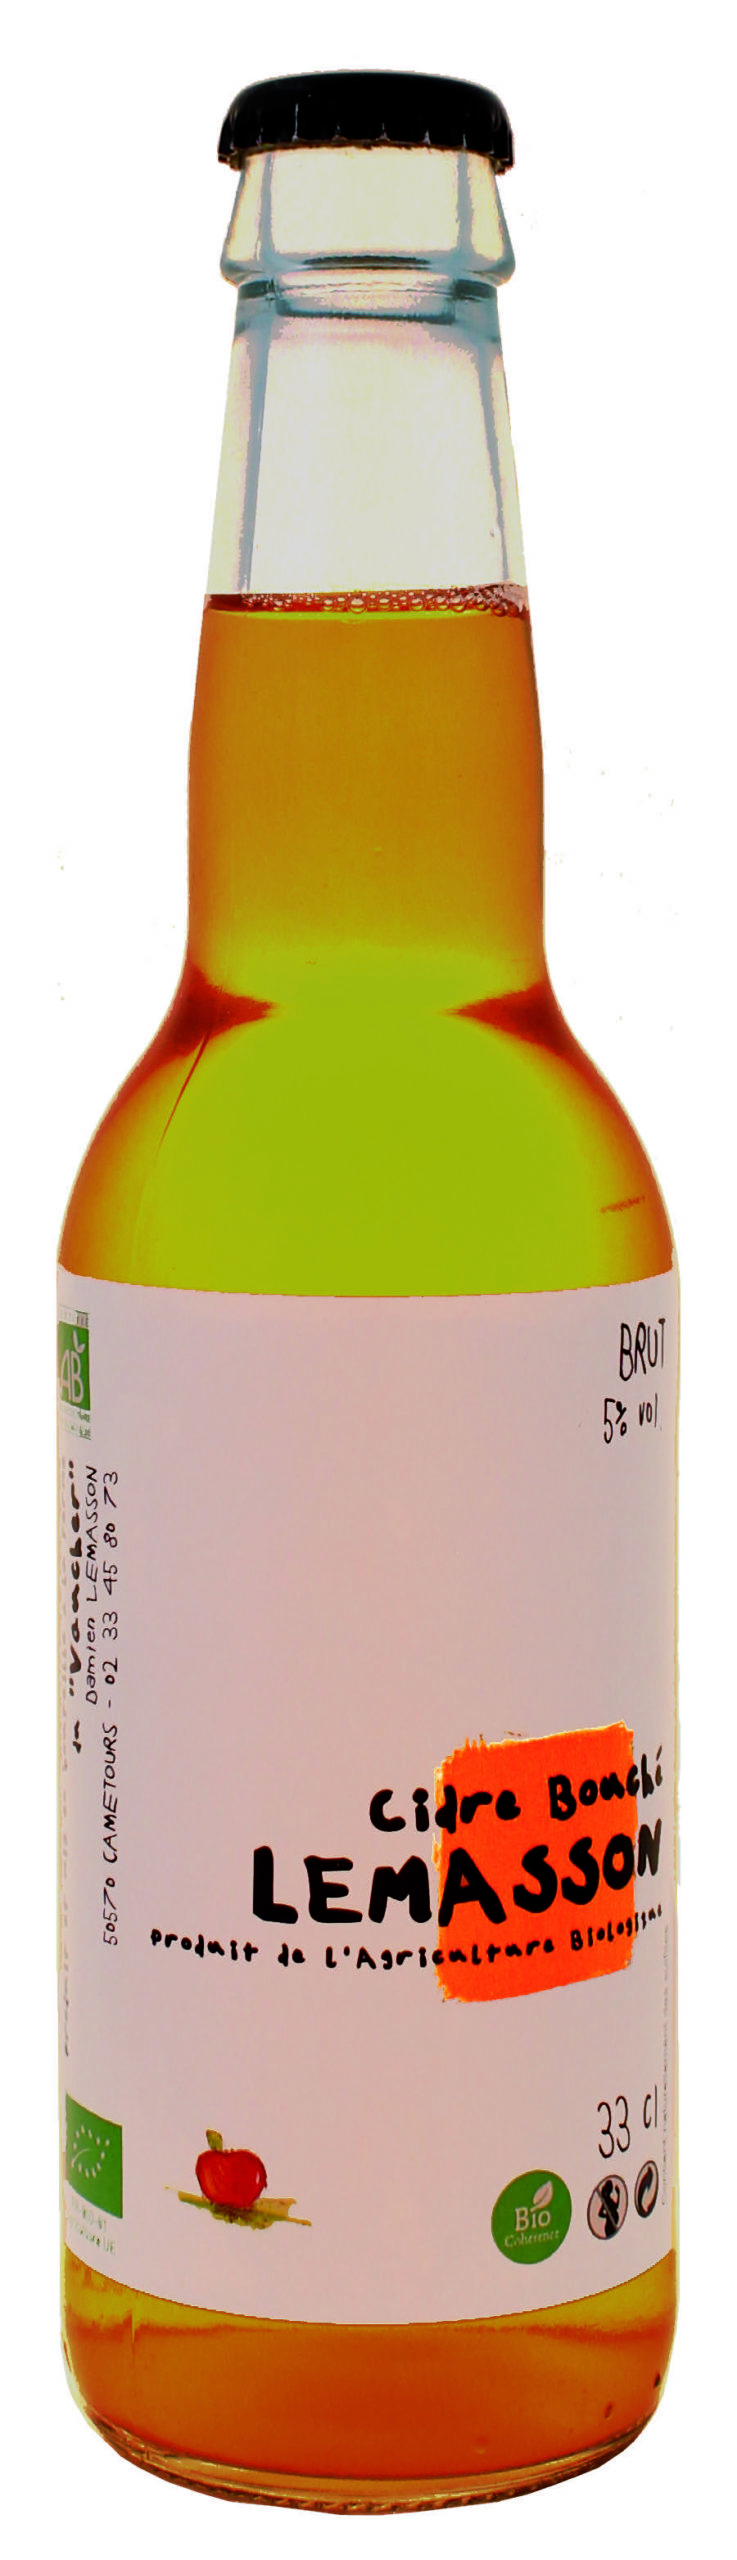 Le Cidre Brut 33cl (x12) – FILS DE POMME